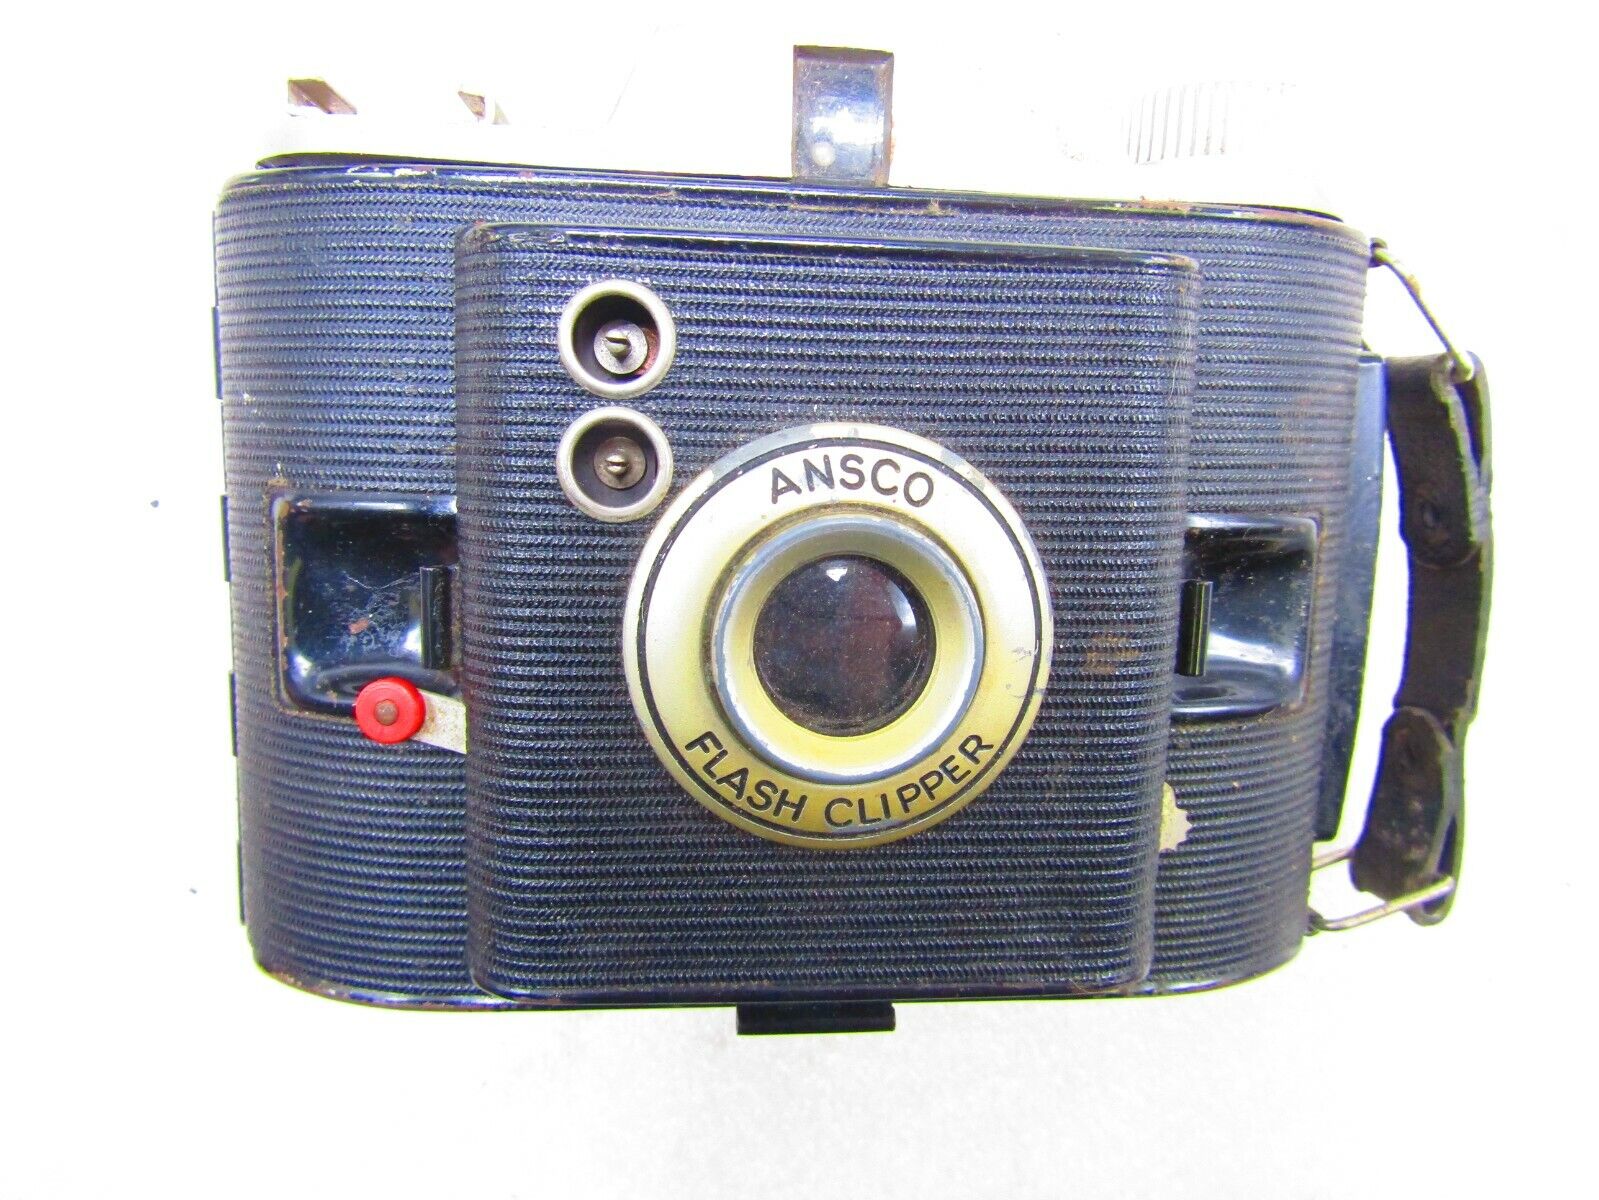 Camera assortment, three units Kodak Advantage F 350 - фотография #9